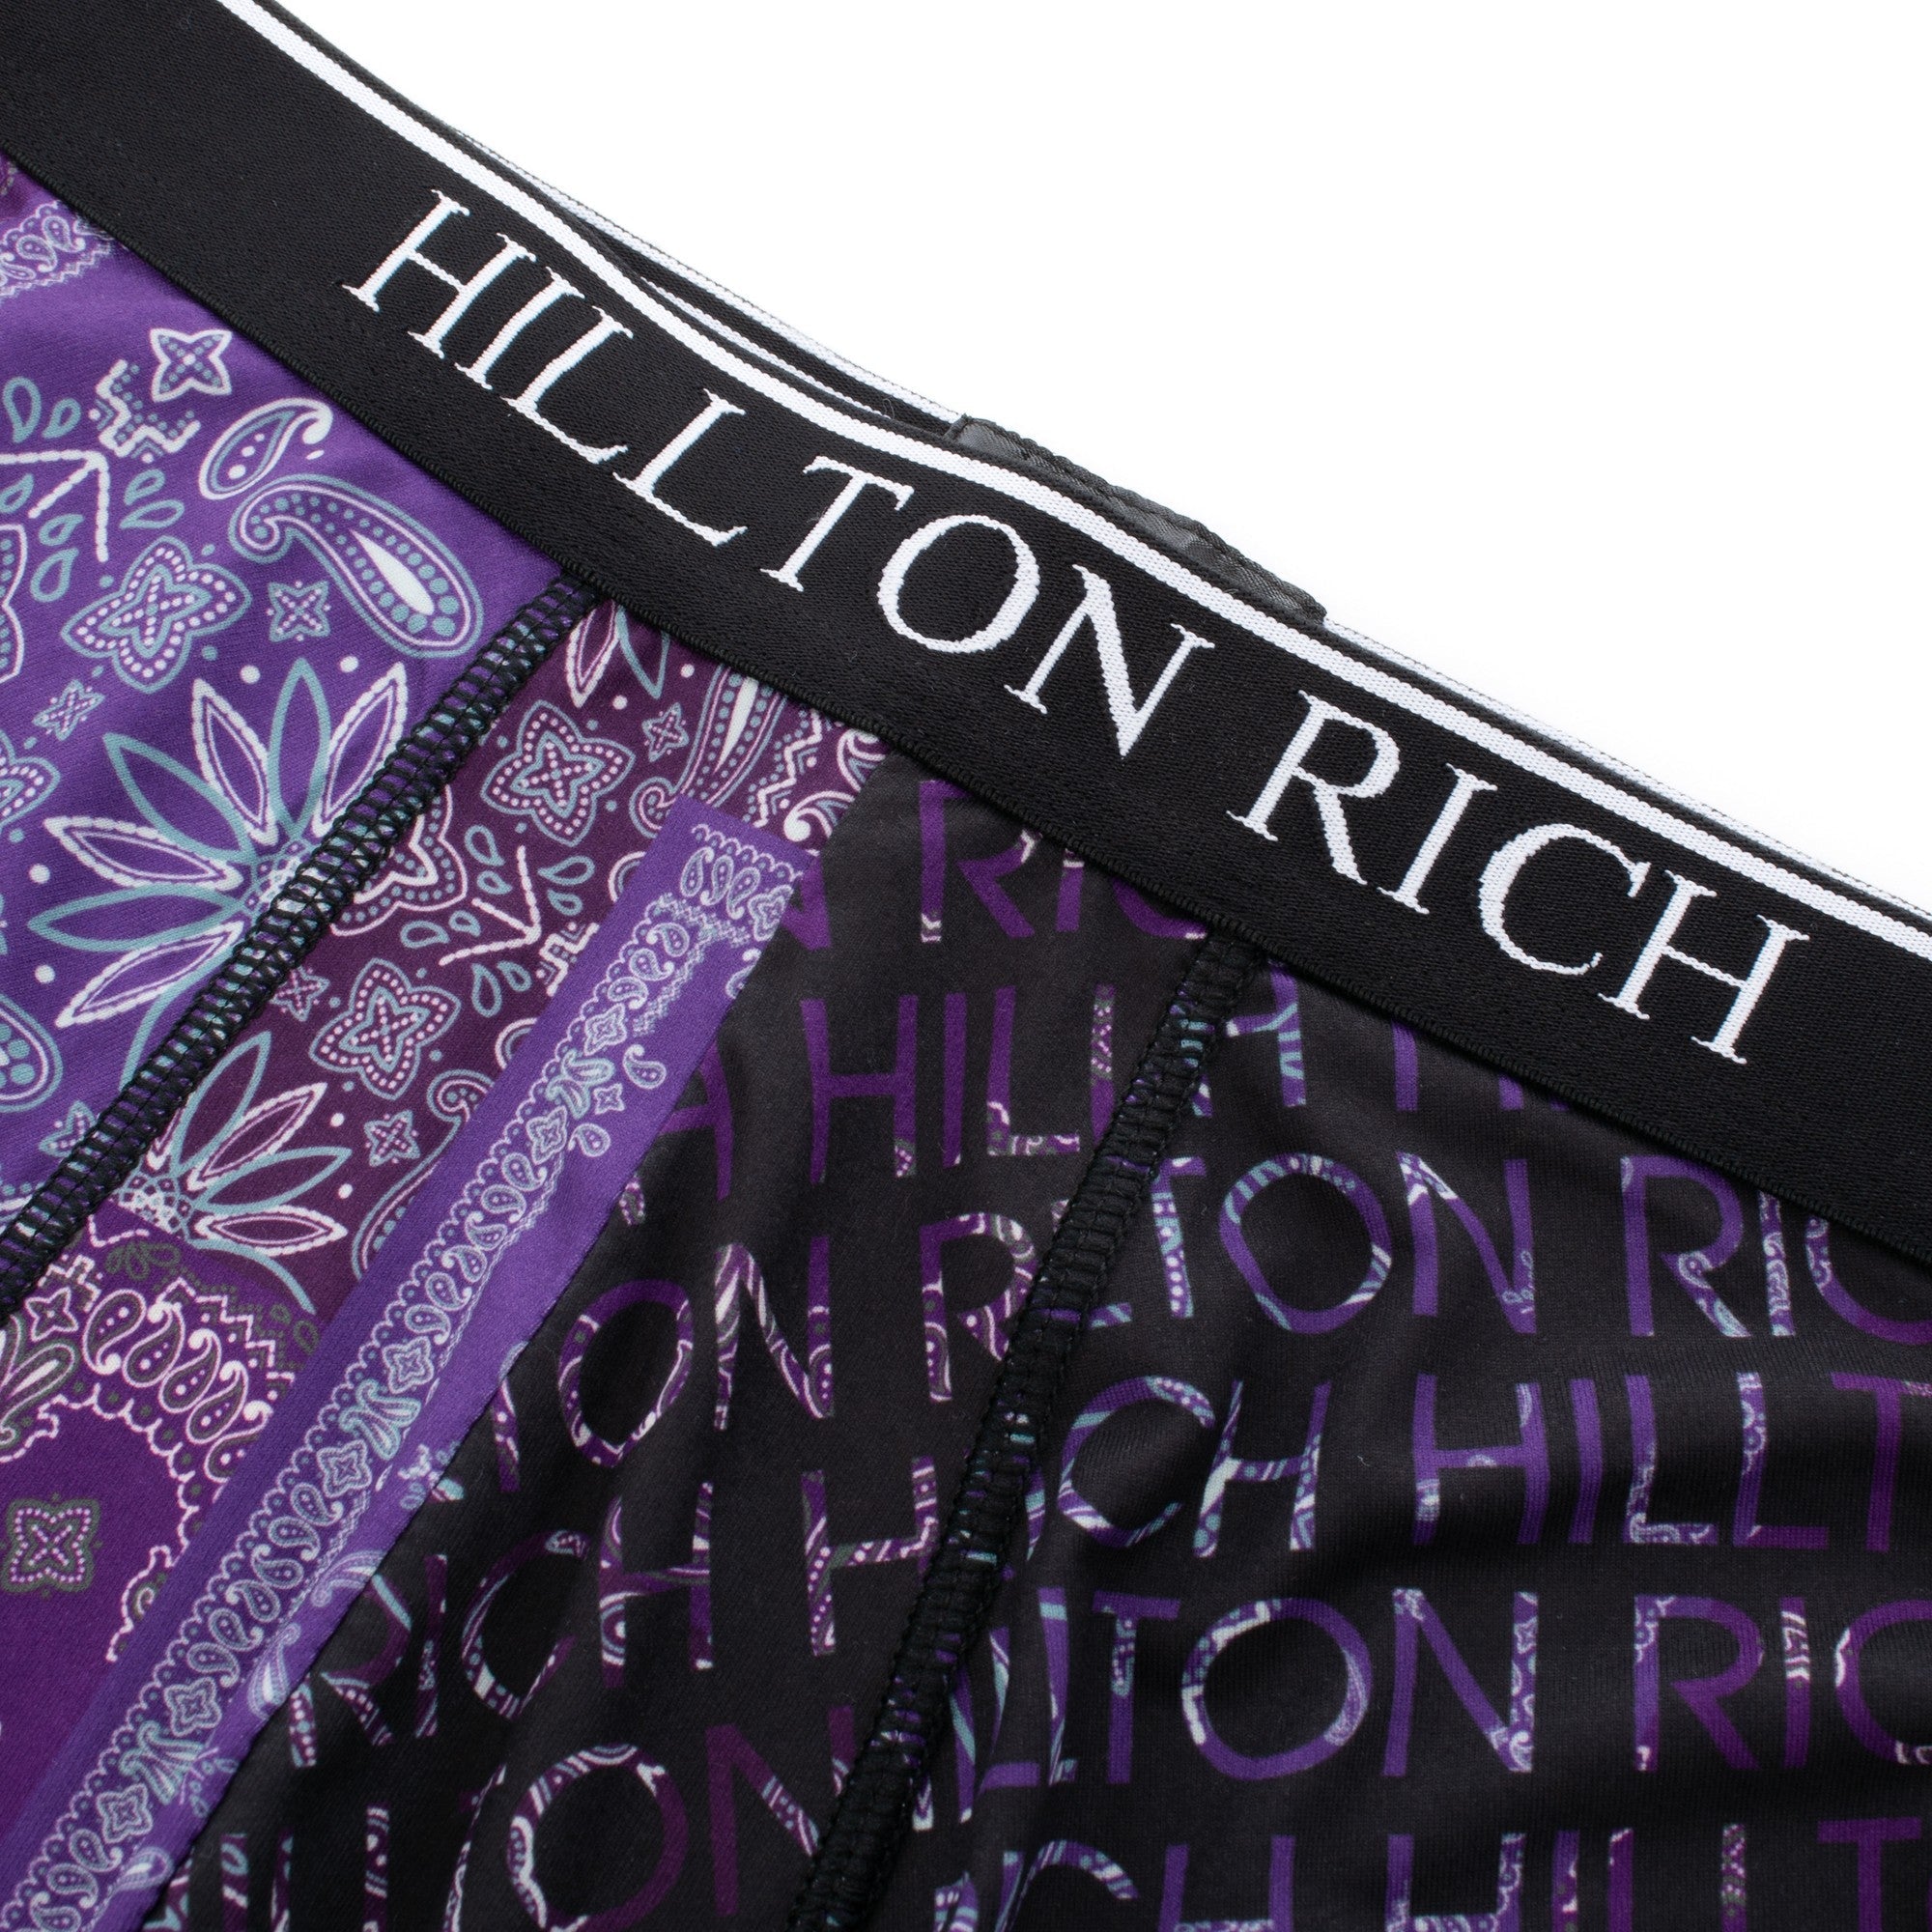 BANDANA PURPLE 紫 HILLTON RICH ( ヒルトンリッチ ） メンズボクサーパンツ シルキータッチ